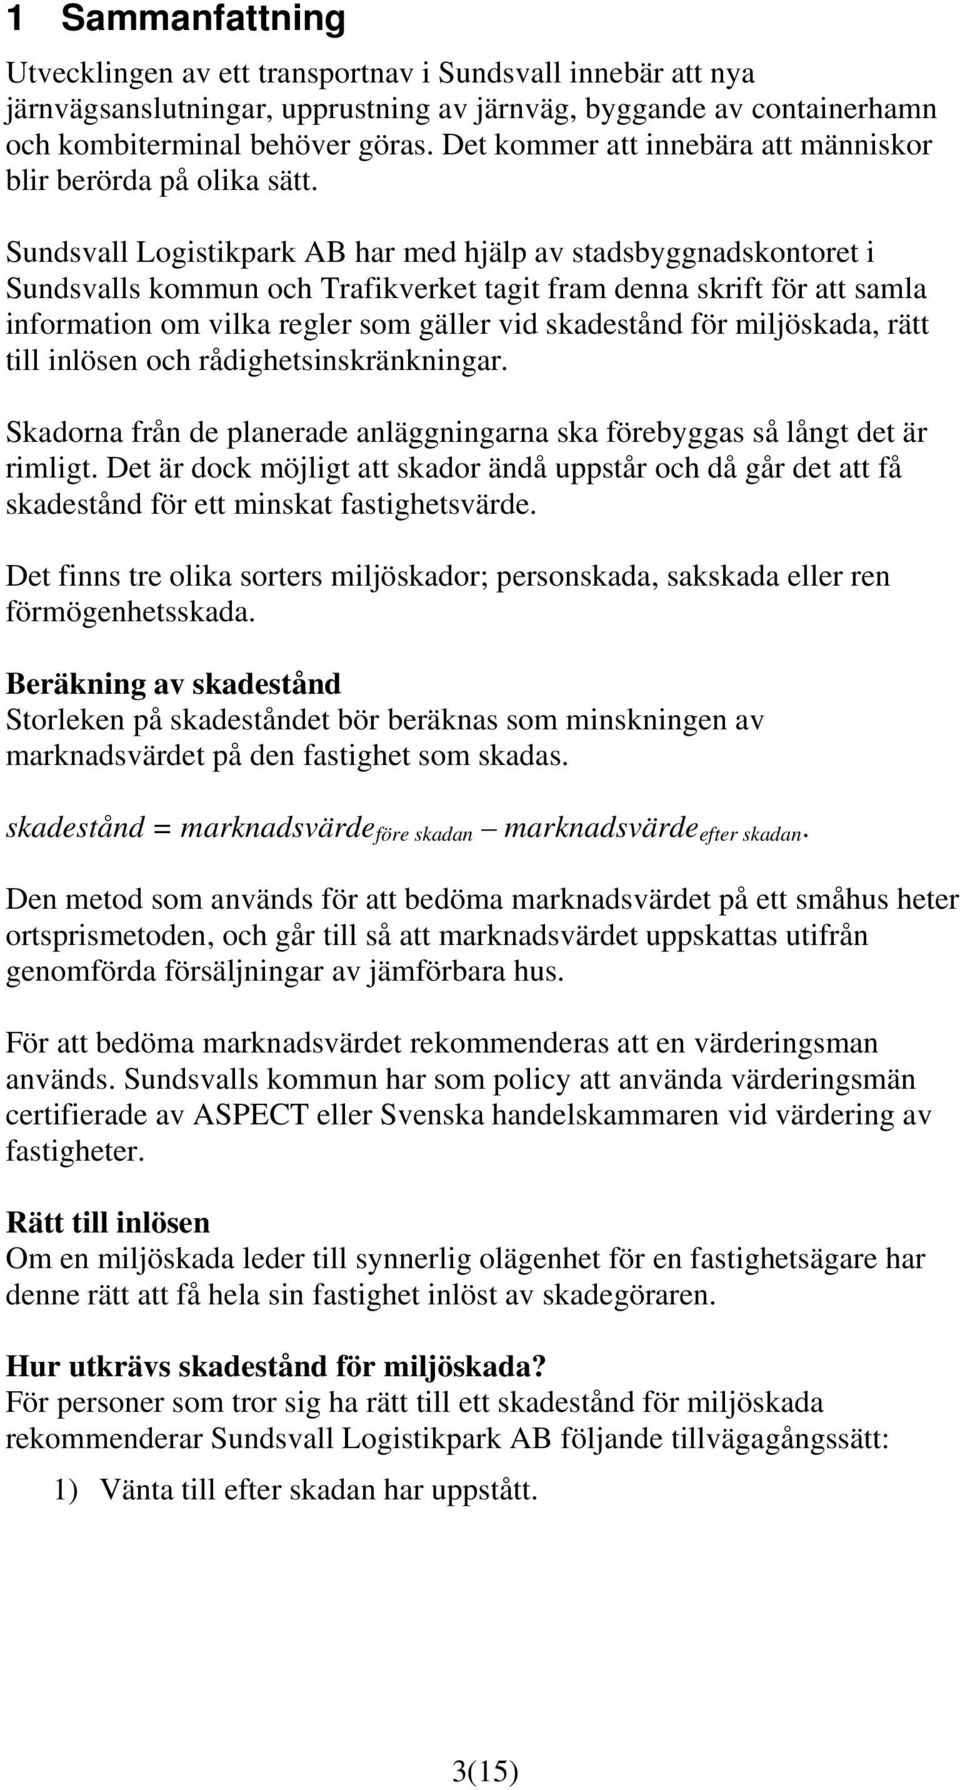 Sundsvall Logistikpark AB har med hjälp av stadsbyggnadskontoret i Sundsvalls kommun och Trafikverket tagit fram denna skrift för att samla information om vilka regler som gäller vid skadestånd för